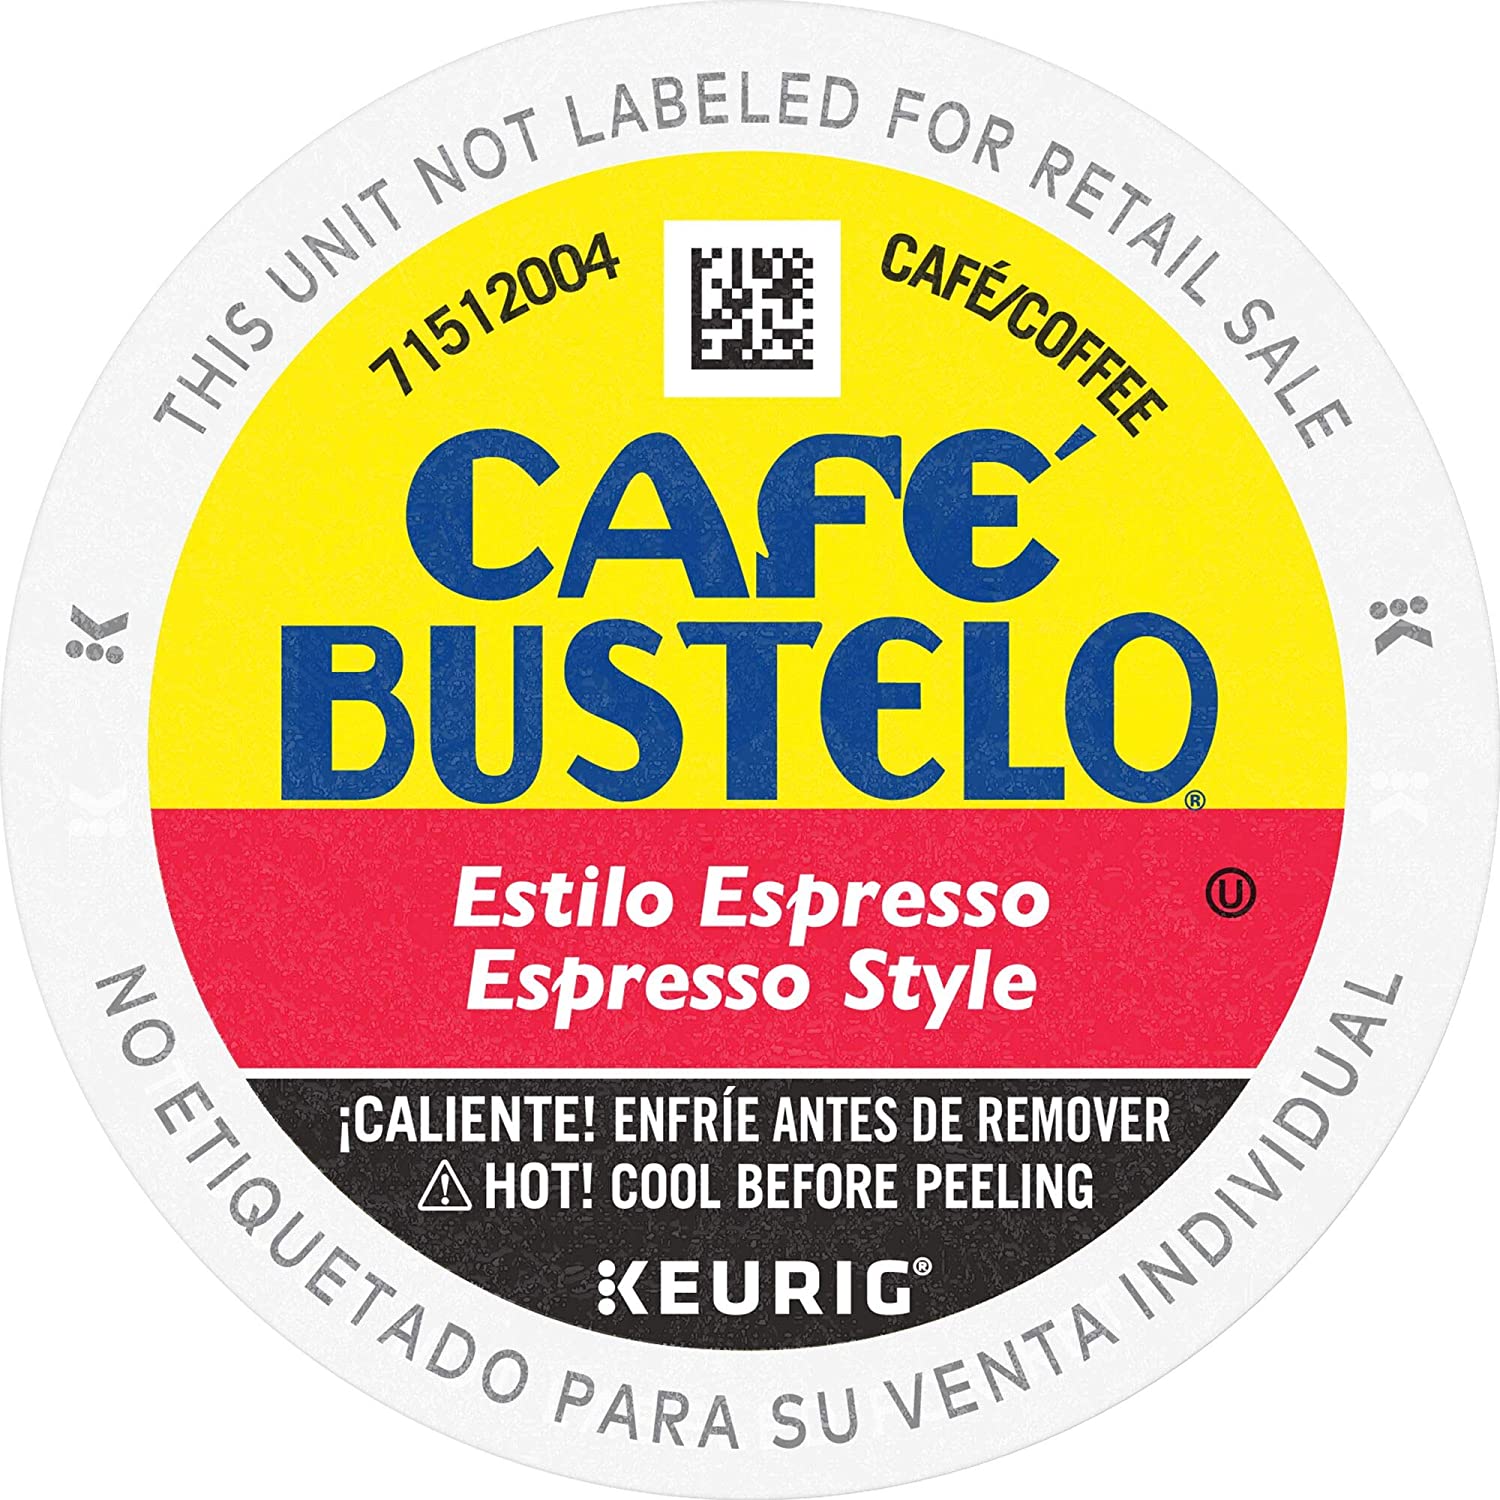 Café Bustelo Espresso Style Dark Roast Coffee K-Cups 96 ct $31.30 ($0.33/cup) at Amazon (was $48.50!)